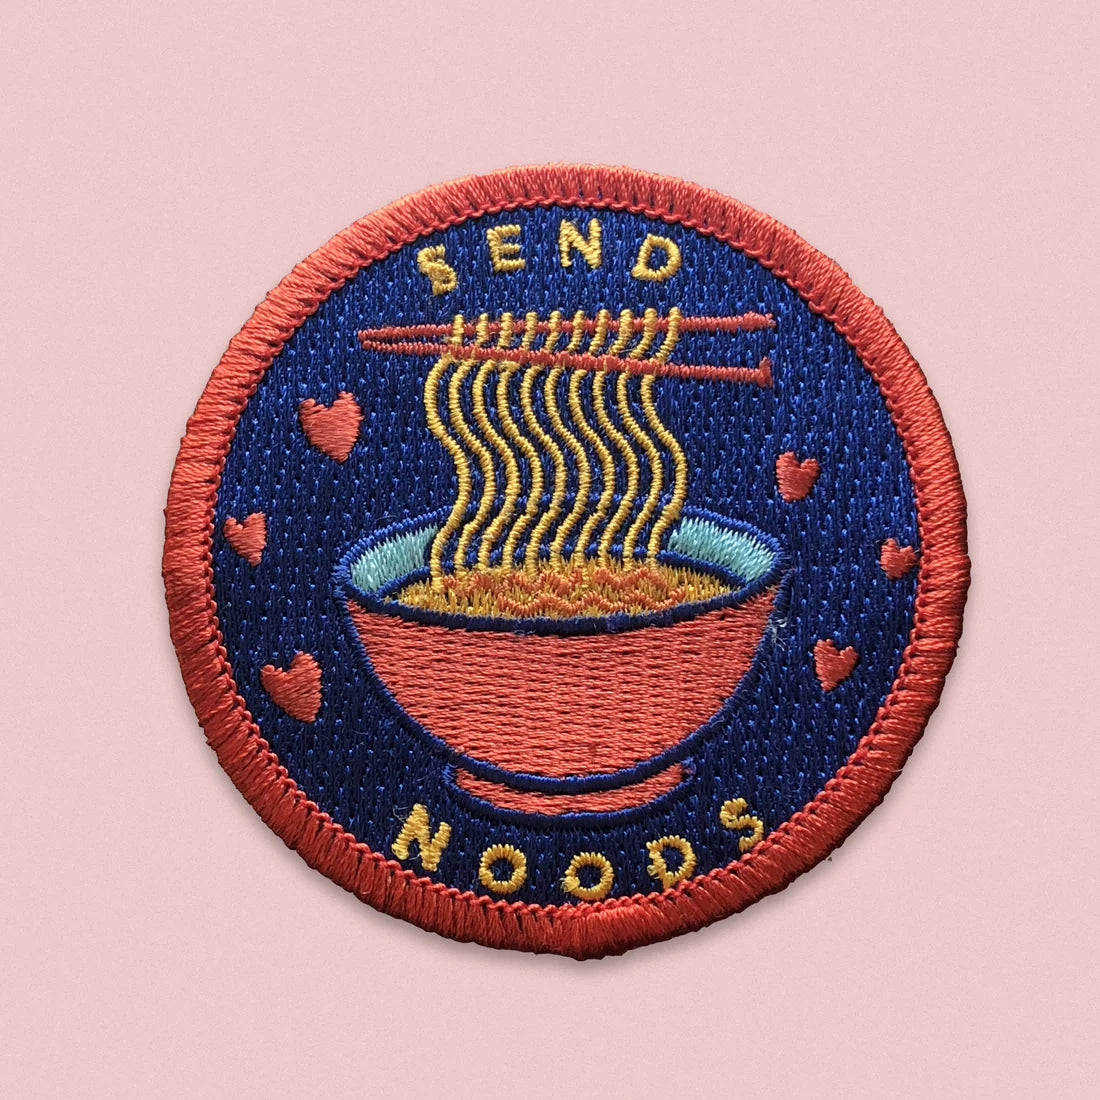 Send Noods Patch